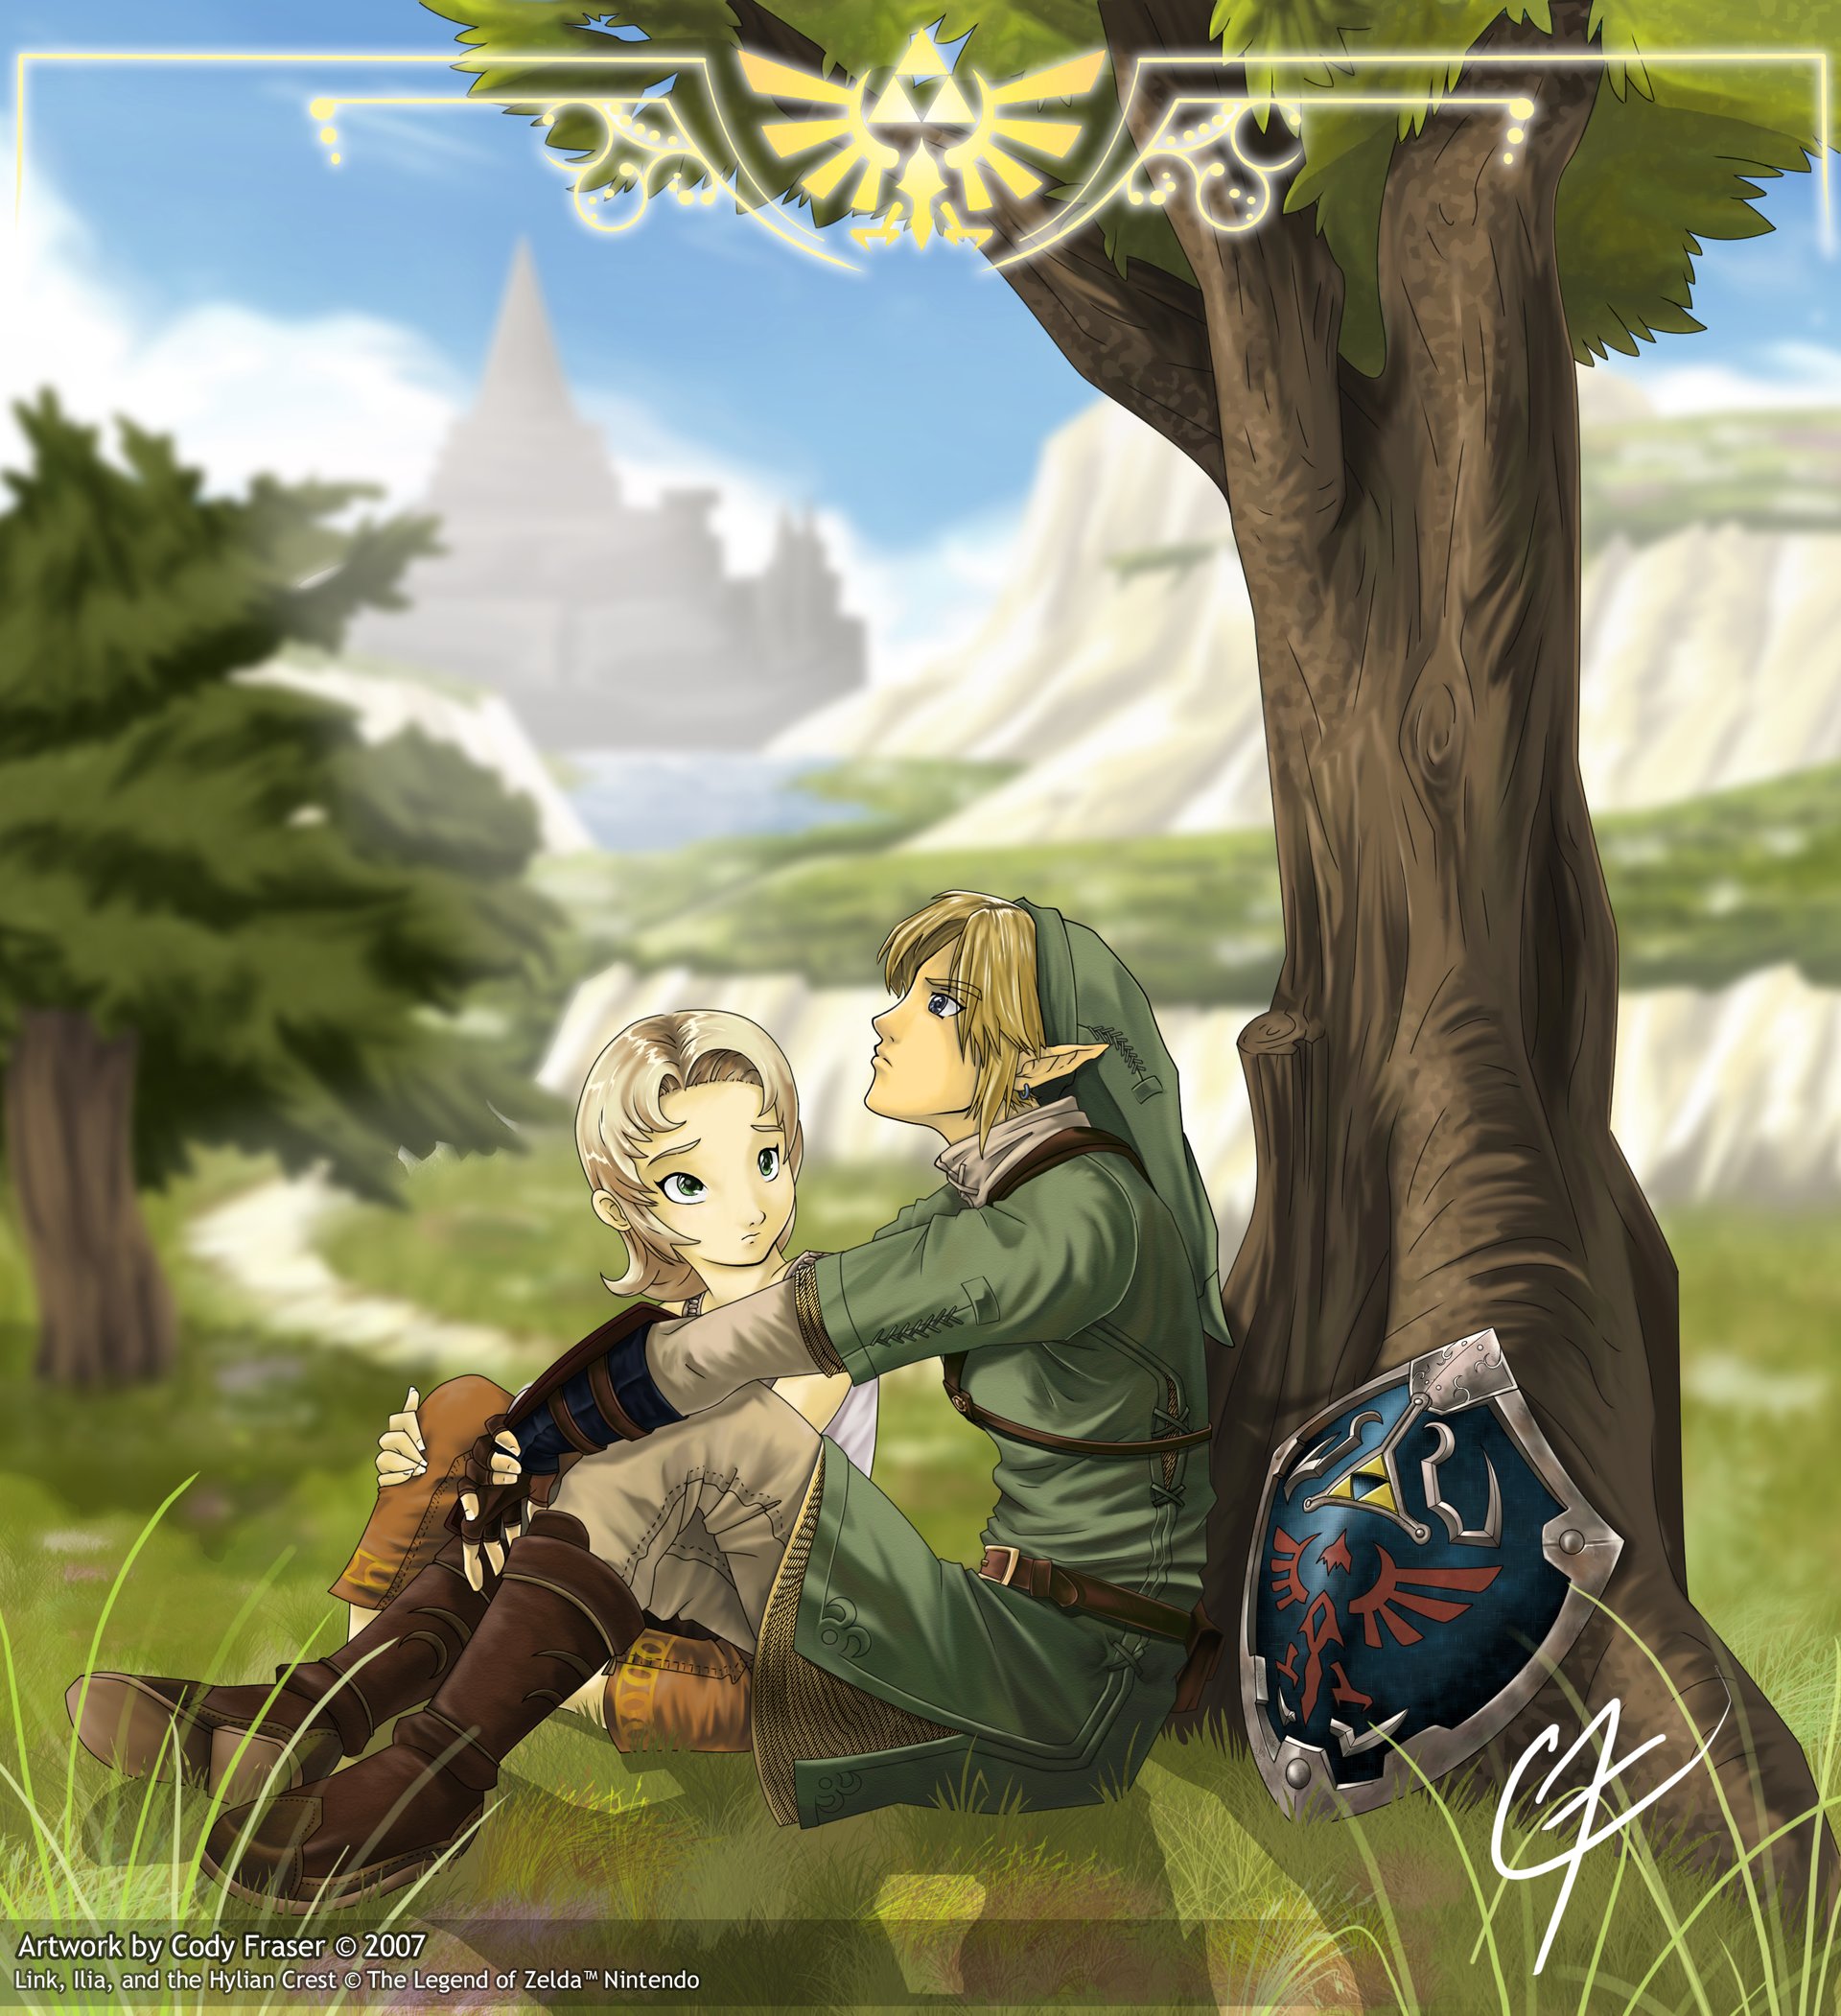 Fanart Illustration for Nintendo's Wii game Legend of Zelda: Twilig...